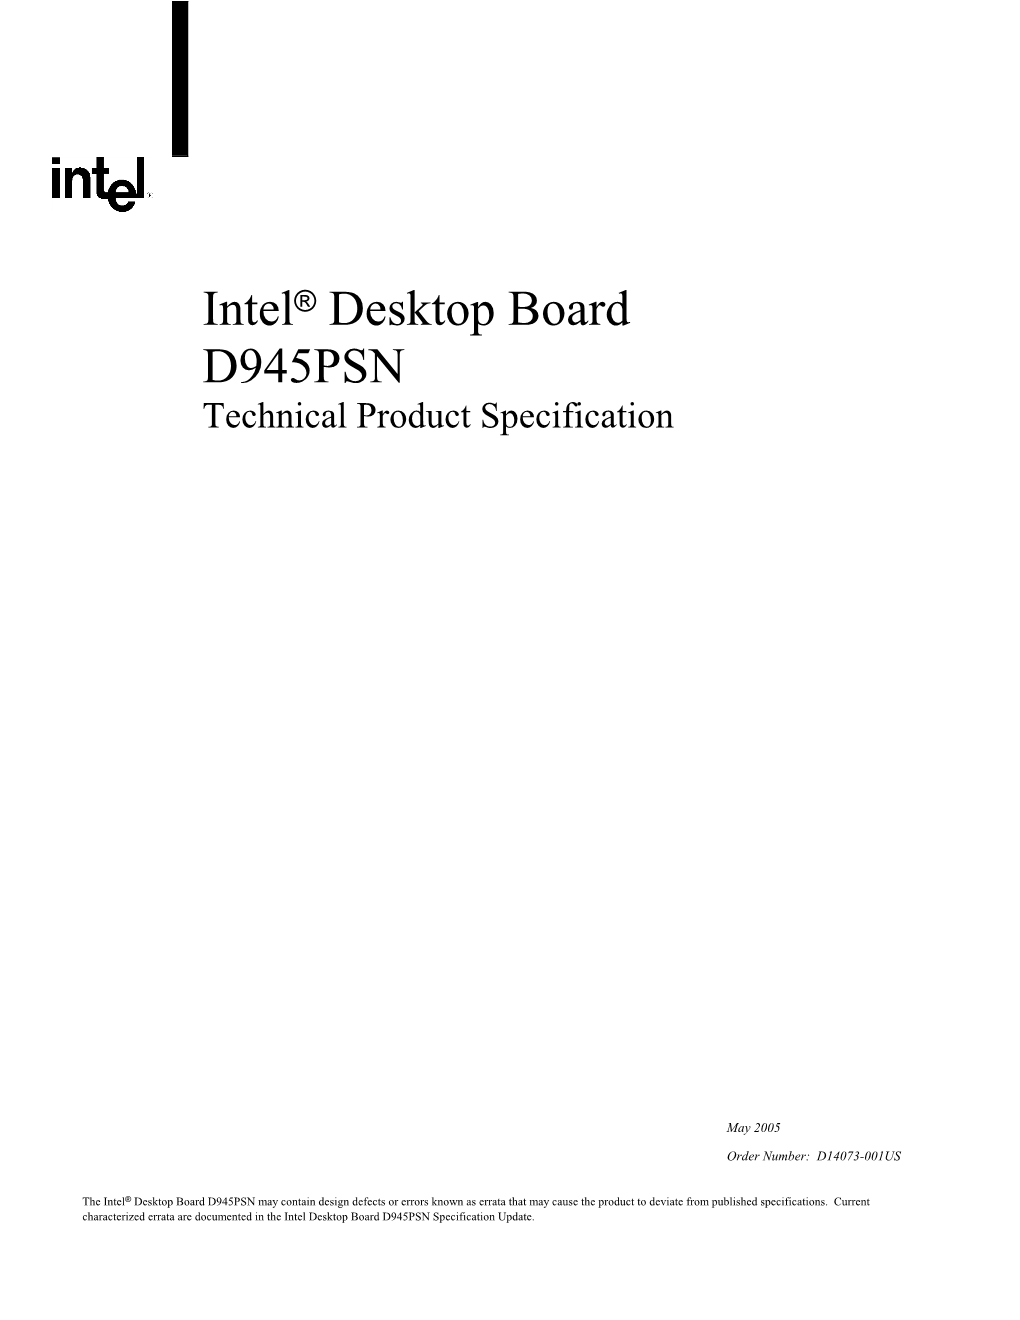 Intel® Desktop Board D945PSN Technical Product Specification